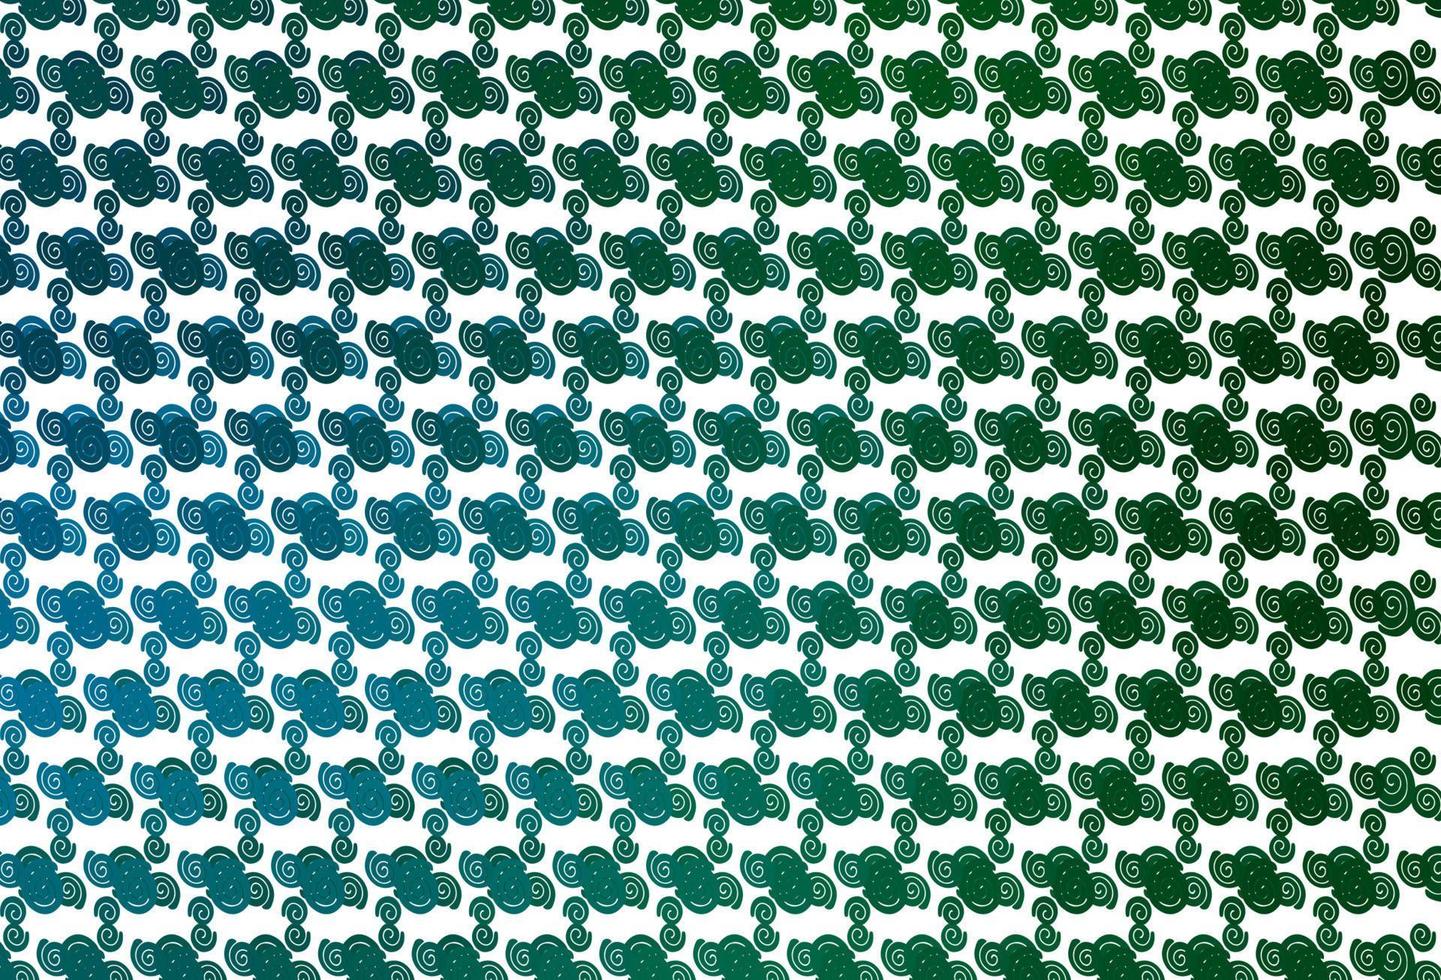 ljusblå, grön vektor mönster med bubbla former.